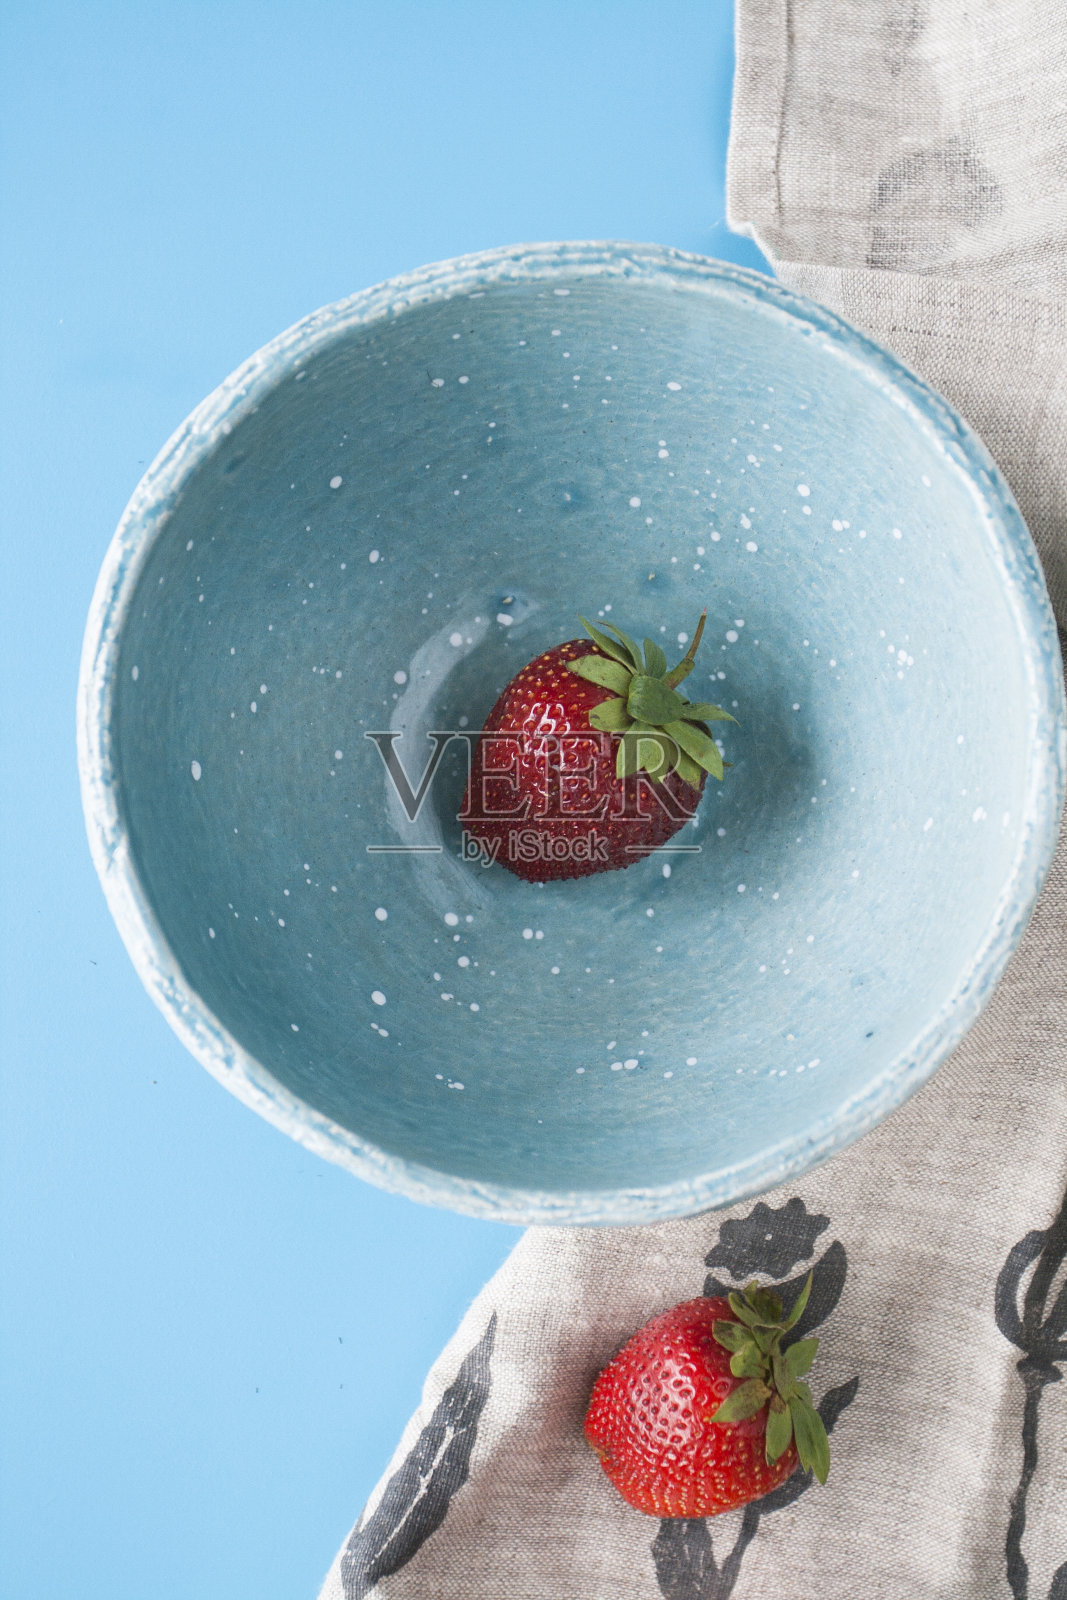 一个红色多汁的草莓放在蓝色的深盘子里，背景是蓝色的。接下来是亚麻布湿巾。前视图。照片摄影图片